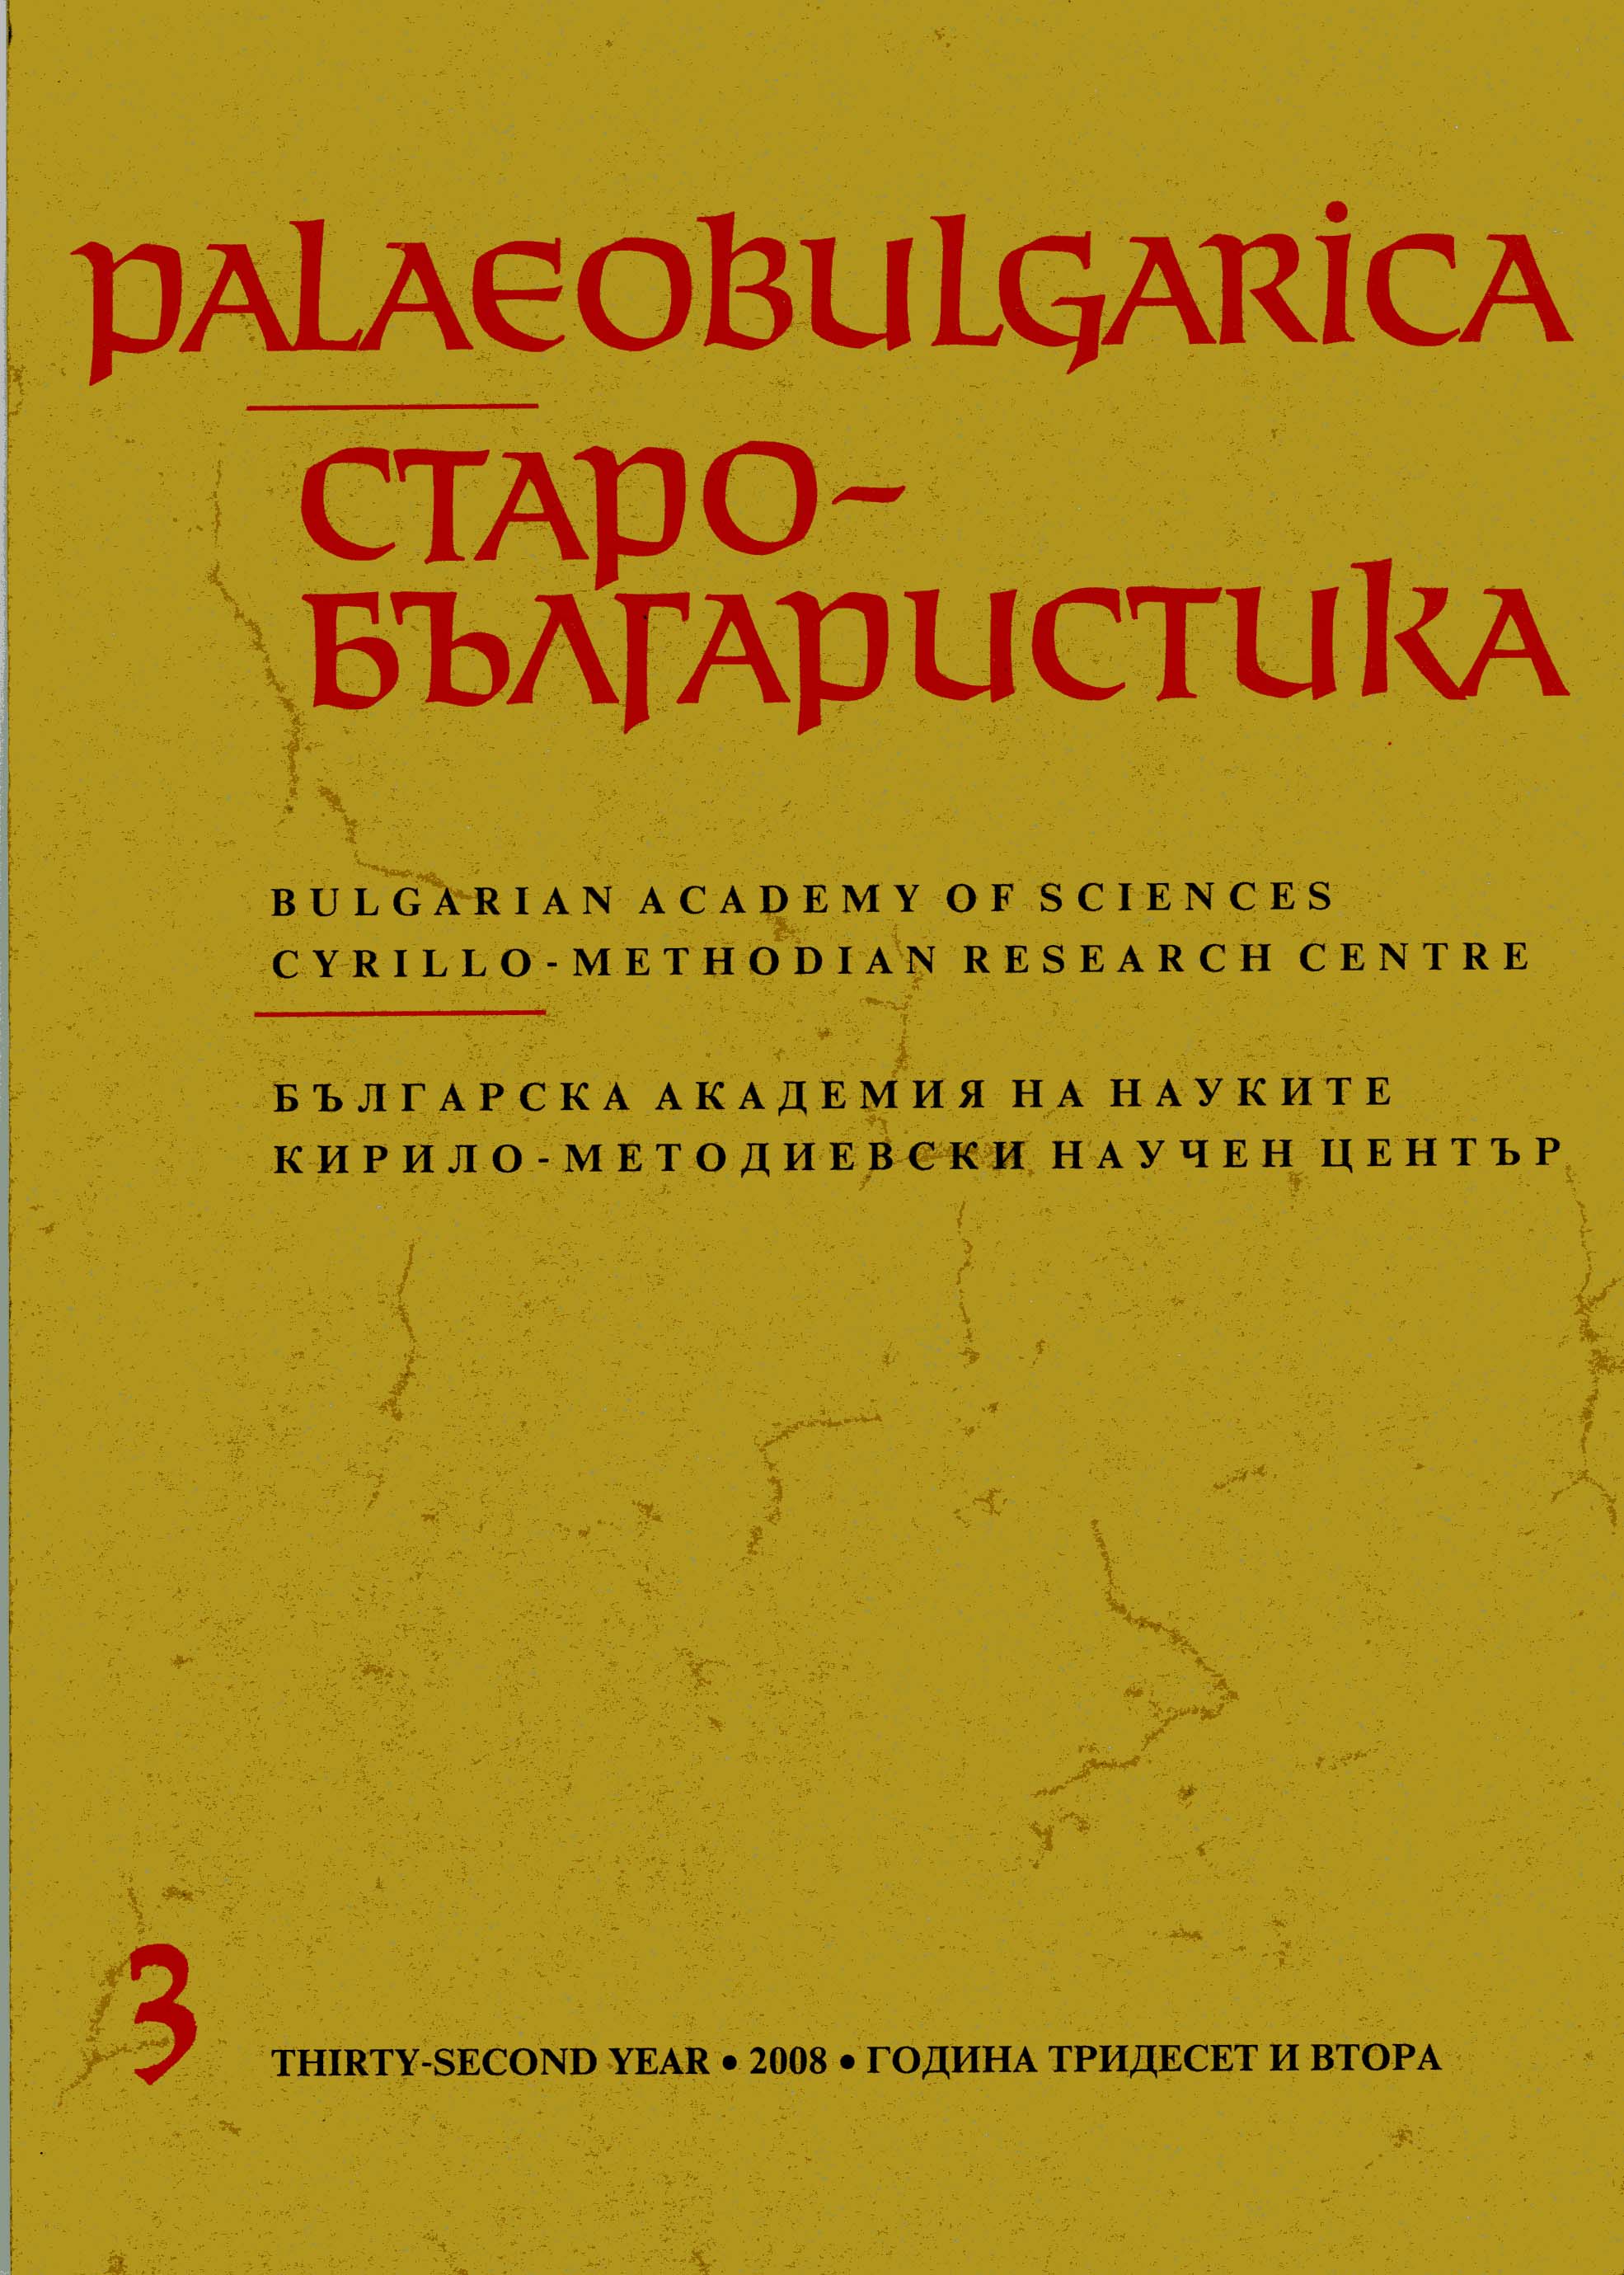 Издание на забележителен паметник на ранната славянска химнография